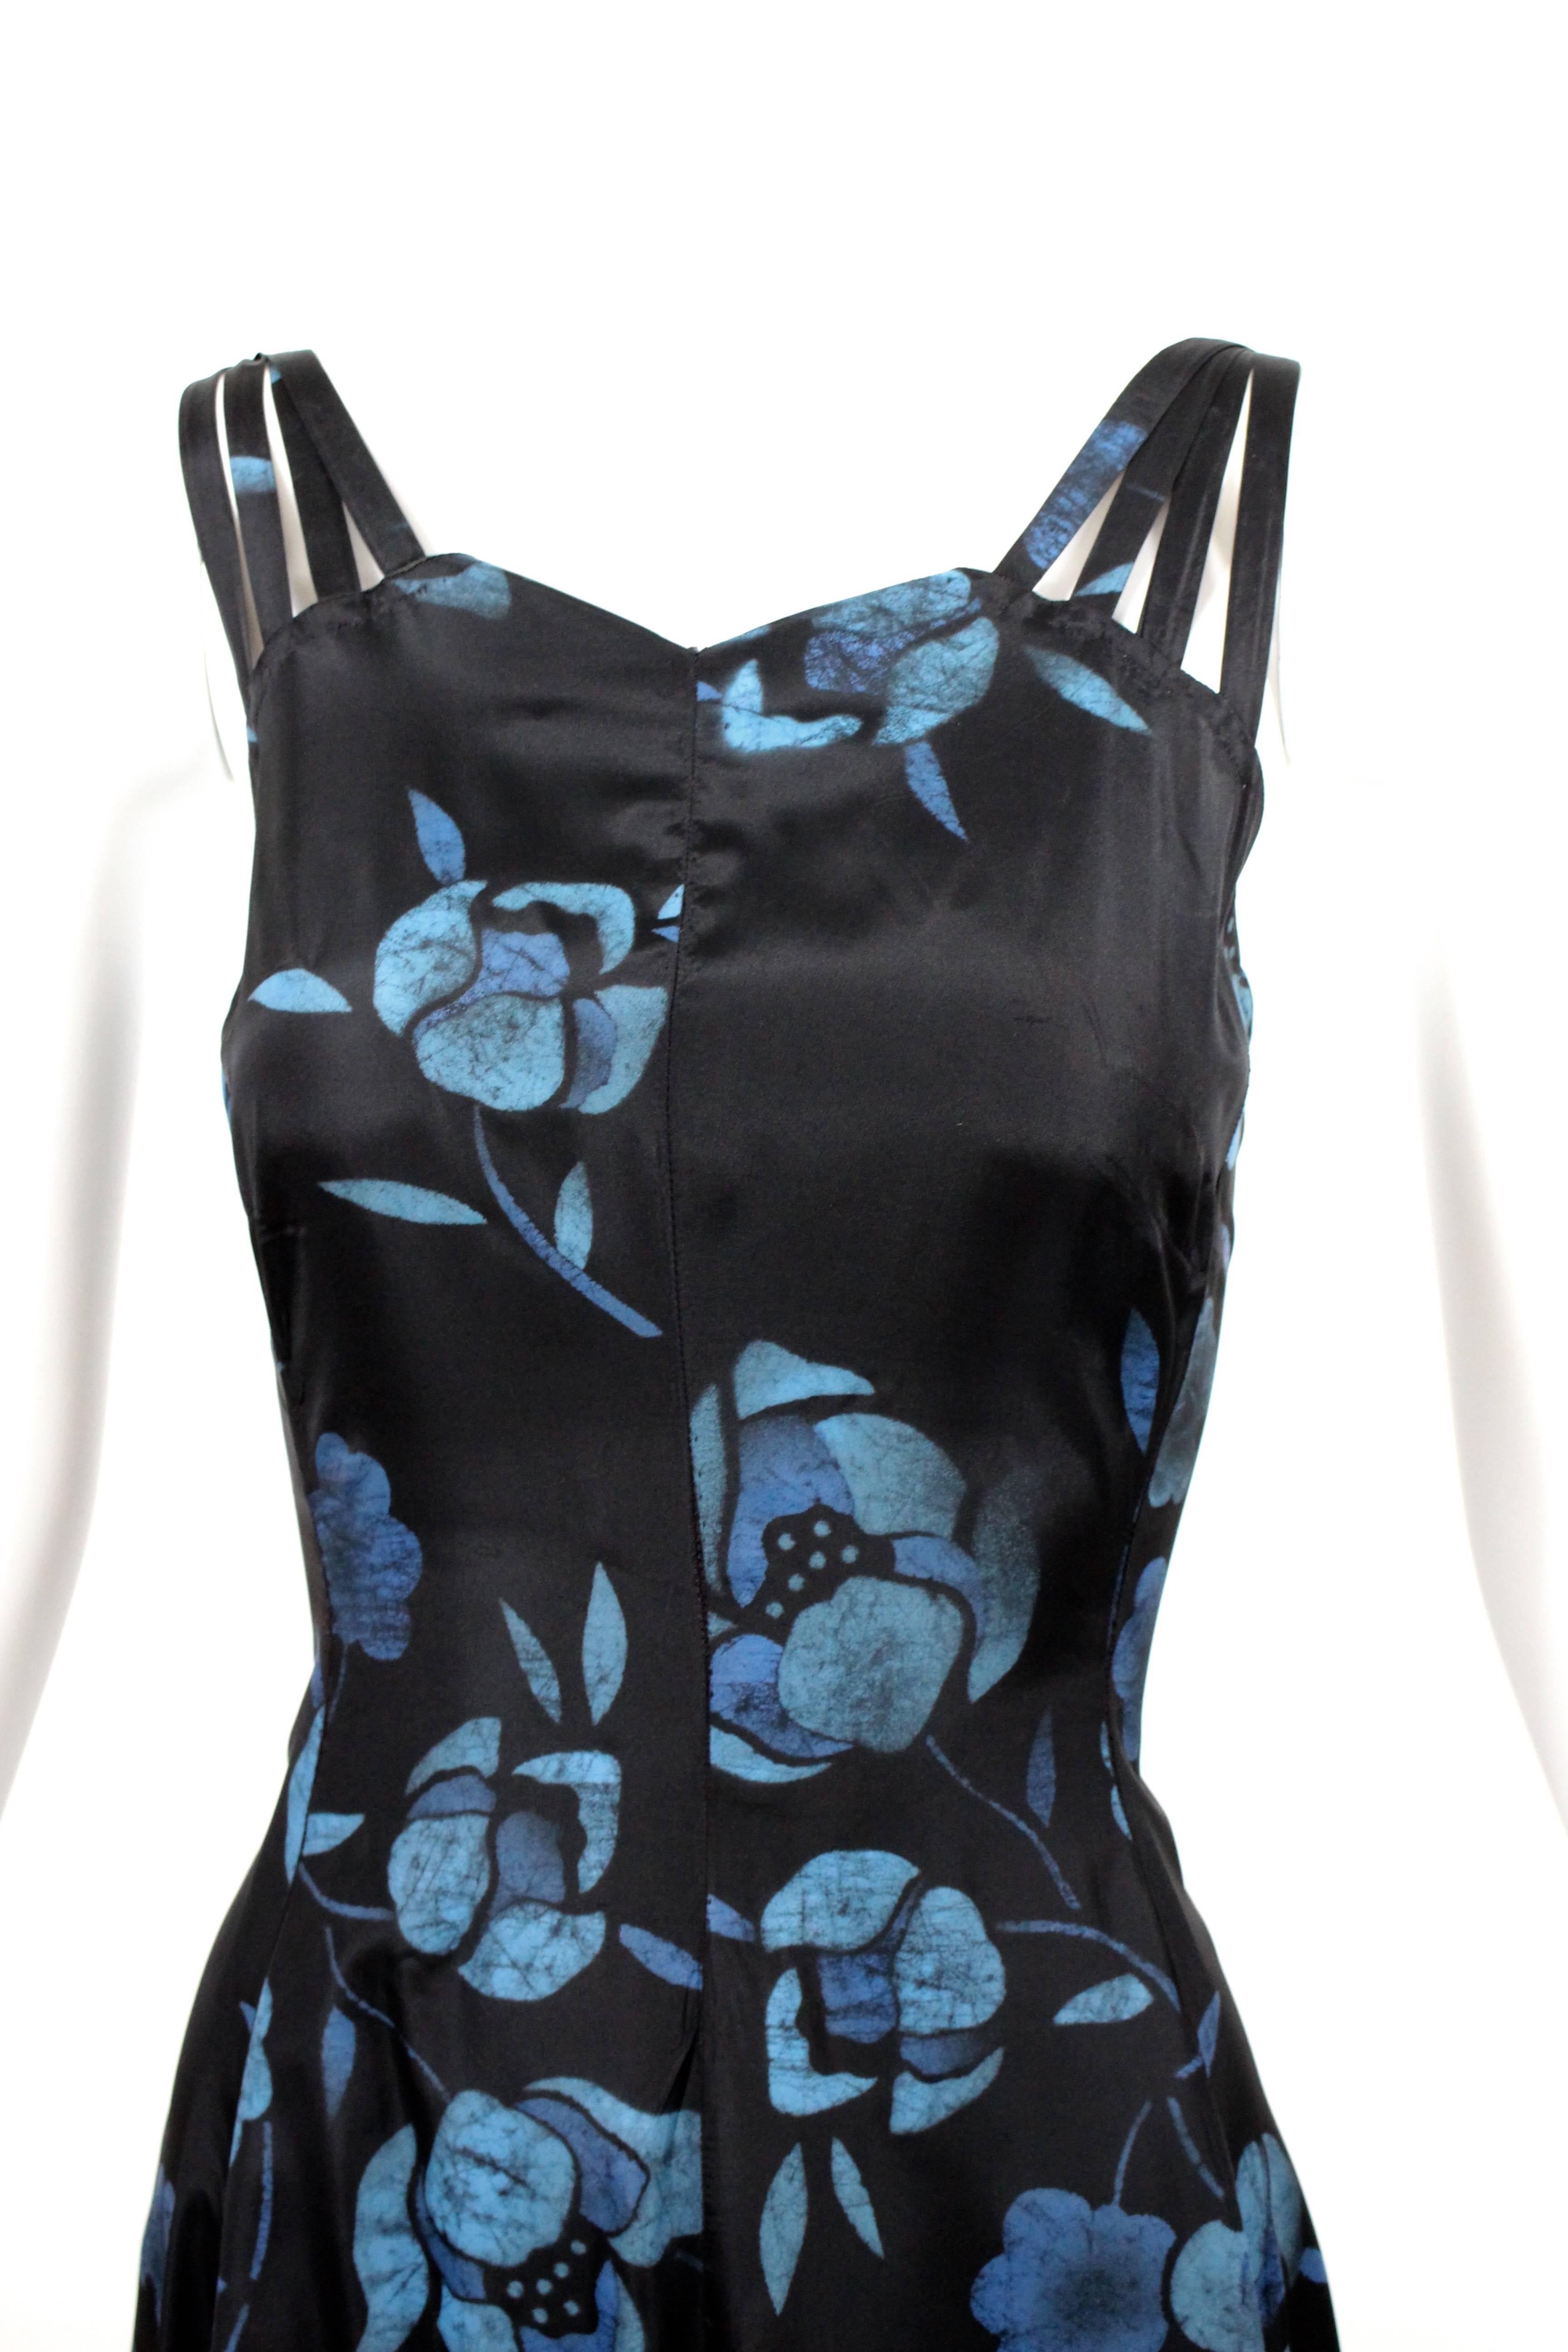 Noir Robe longue sans manches à bretelles en batik imprimé floral noir et bleu (années 1930) en vente